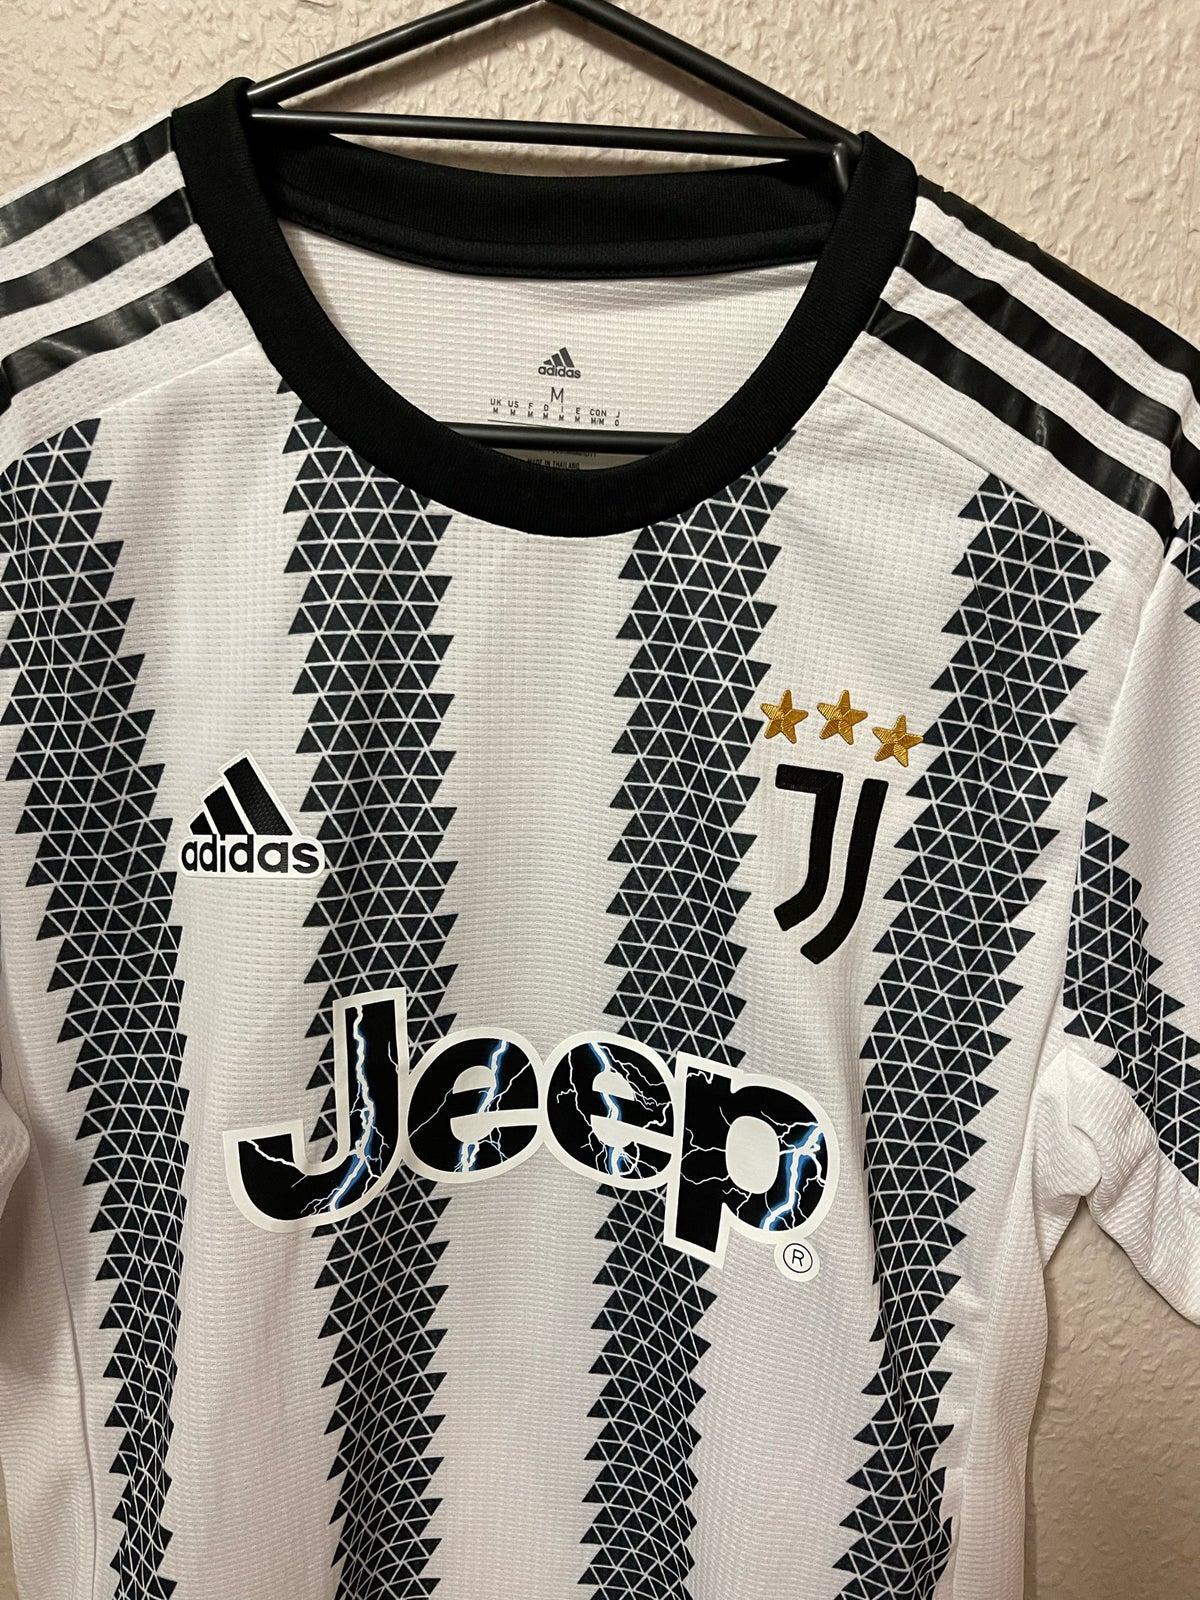 Fodboldtrøje, Juventus hjemmebanetrøje med ronaldo